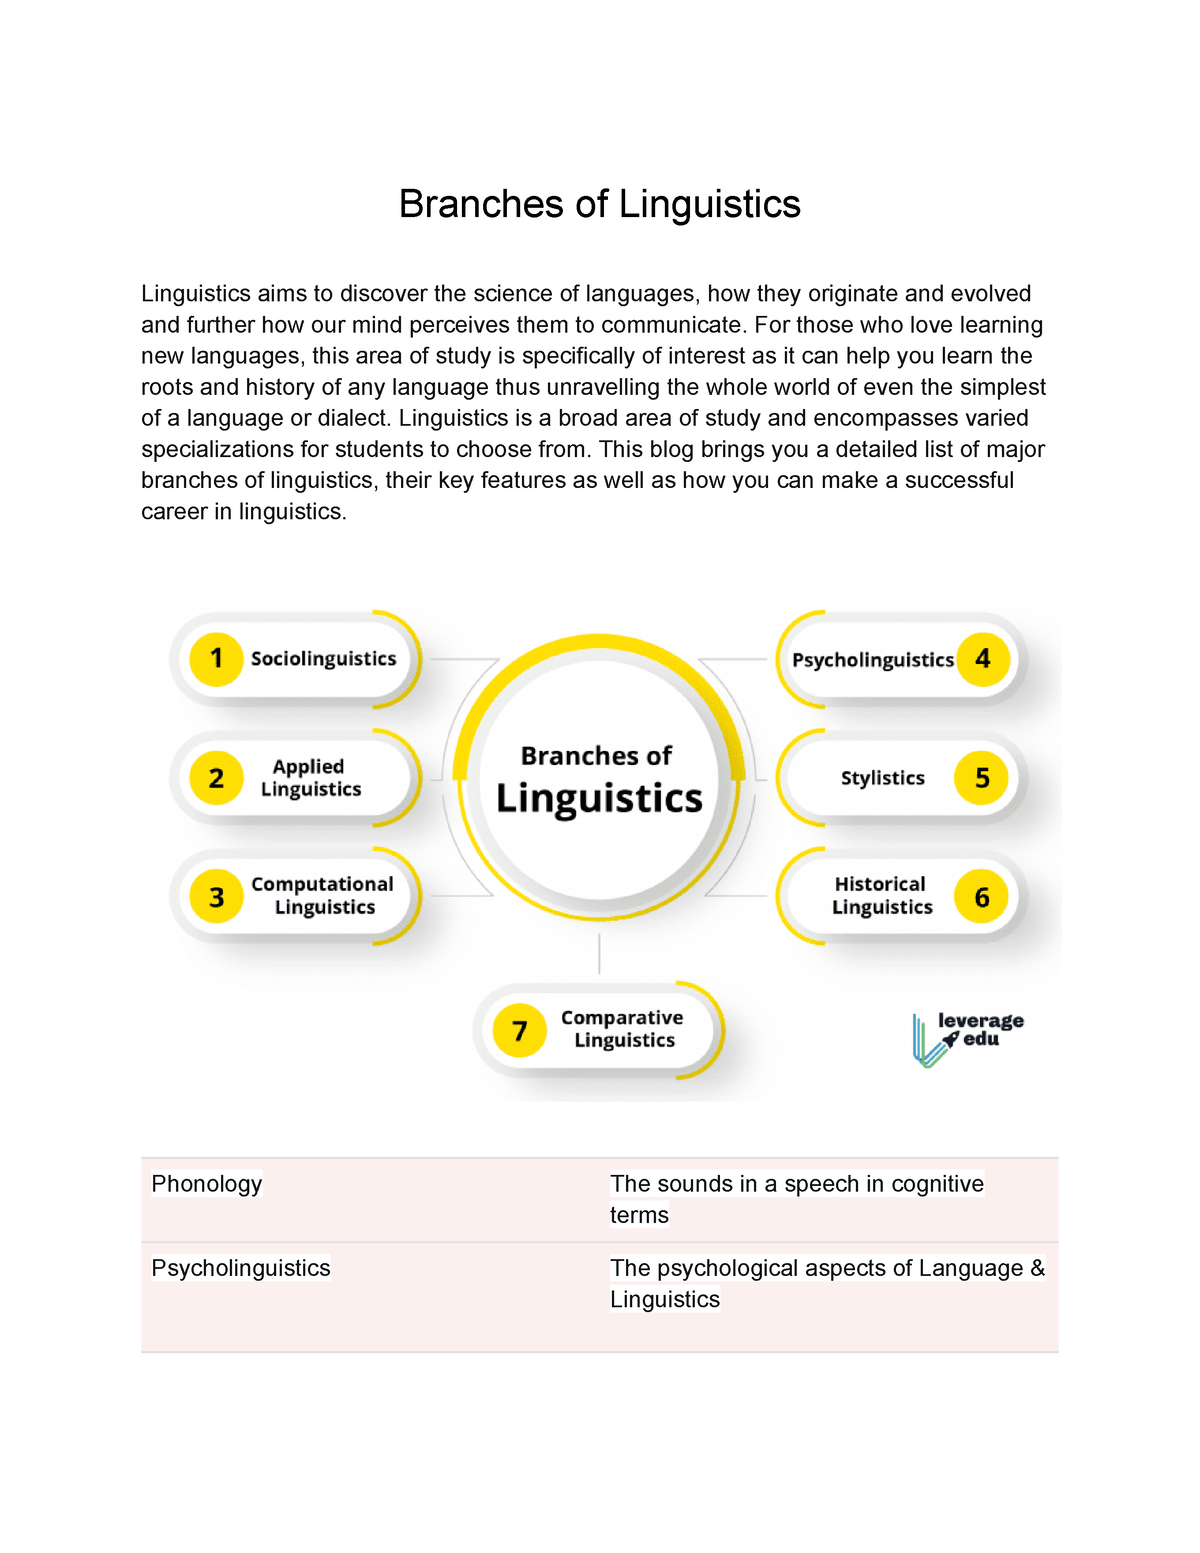 ucla linguistics dissertations